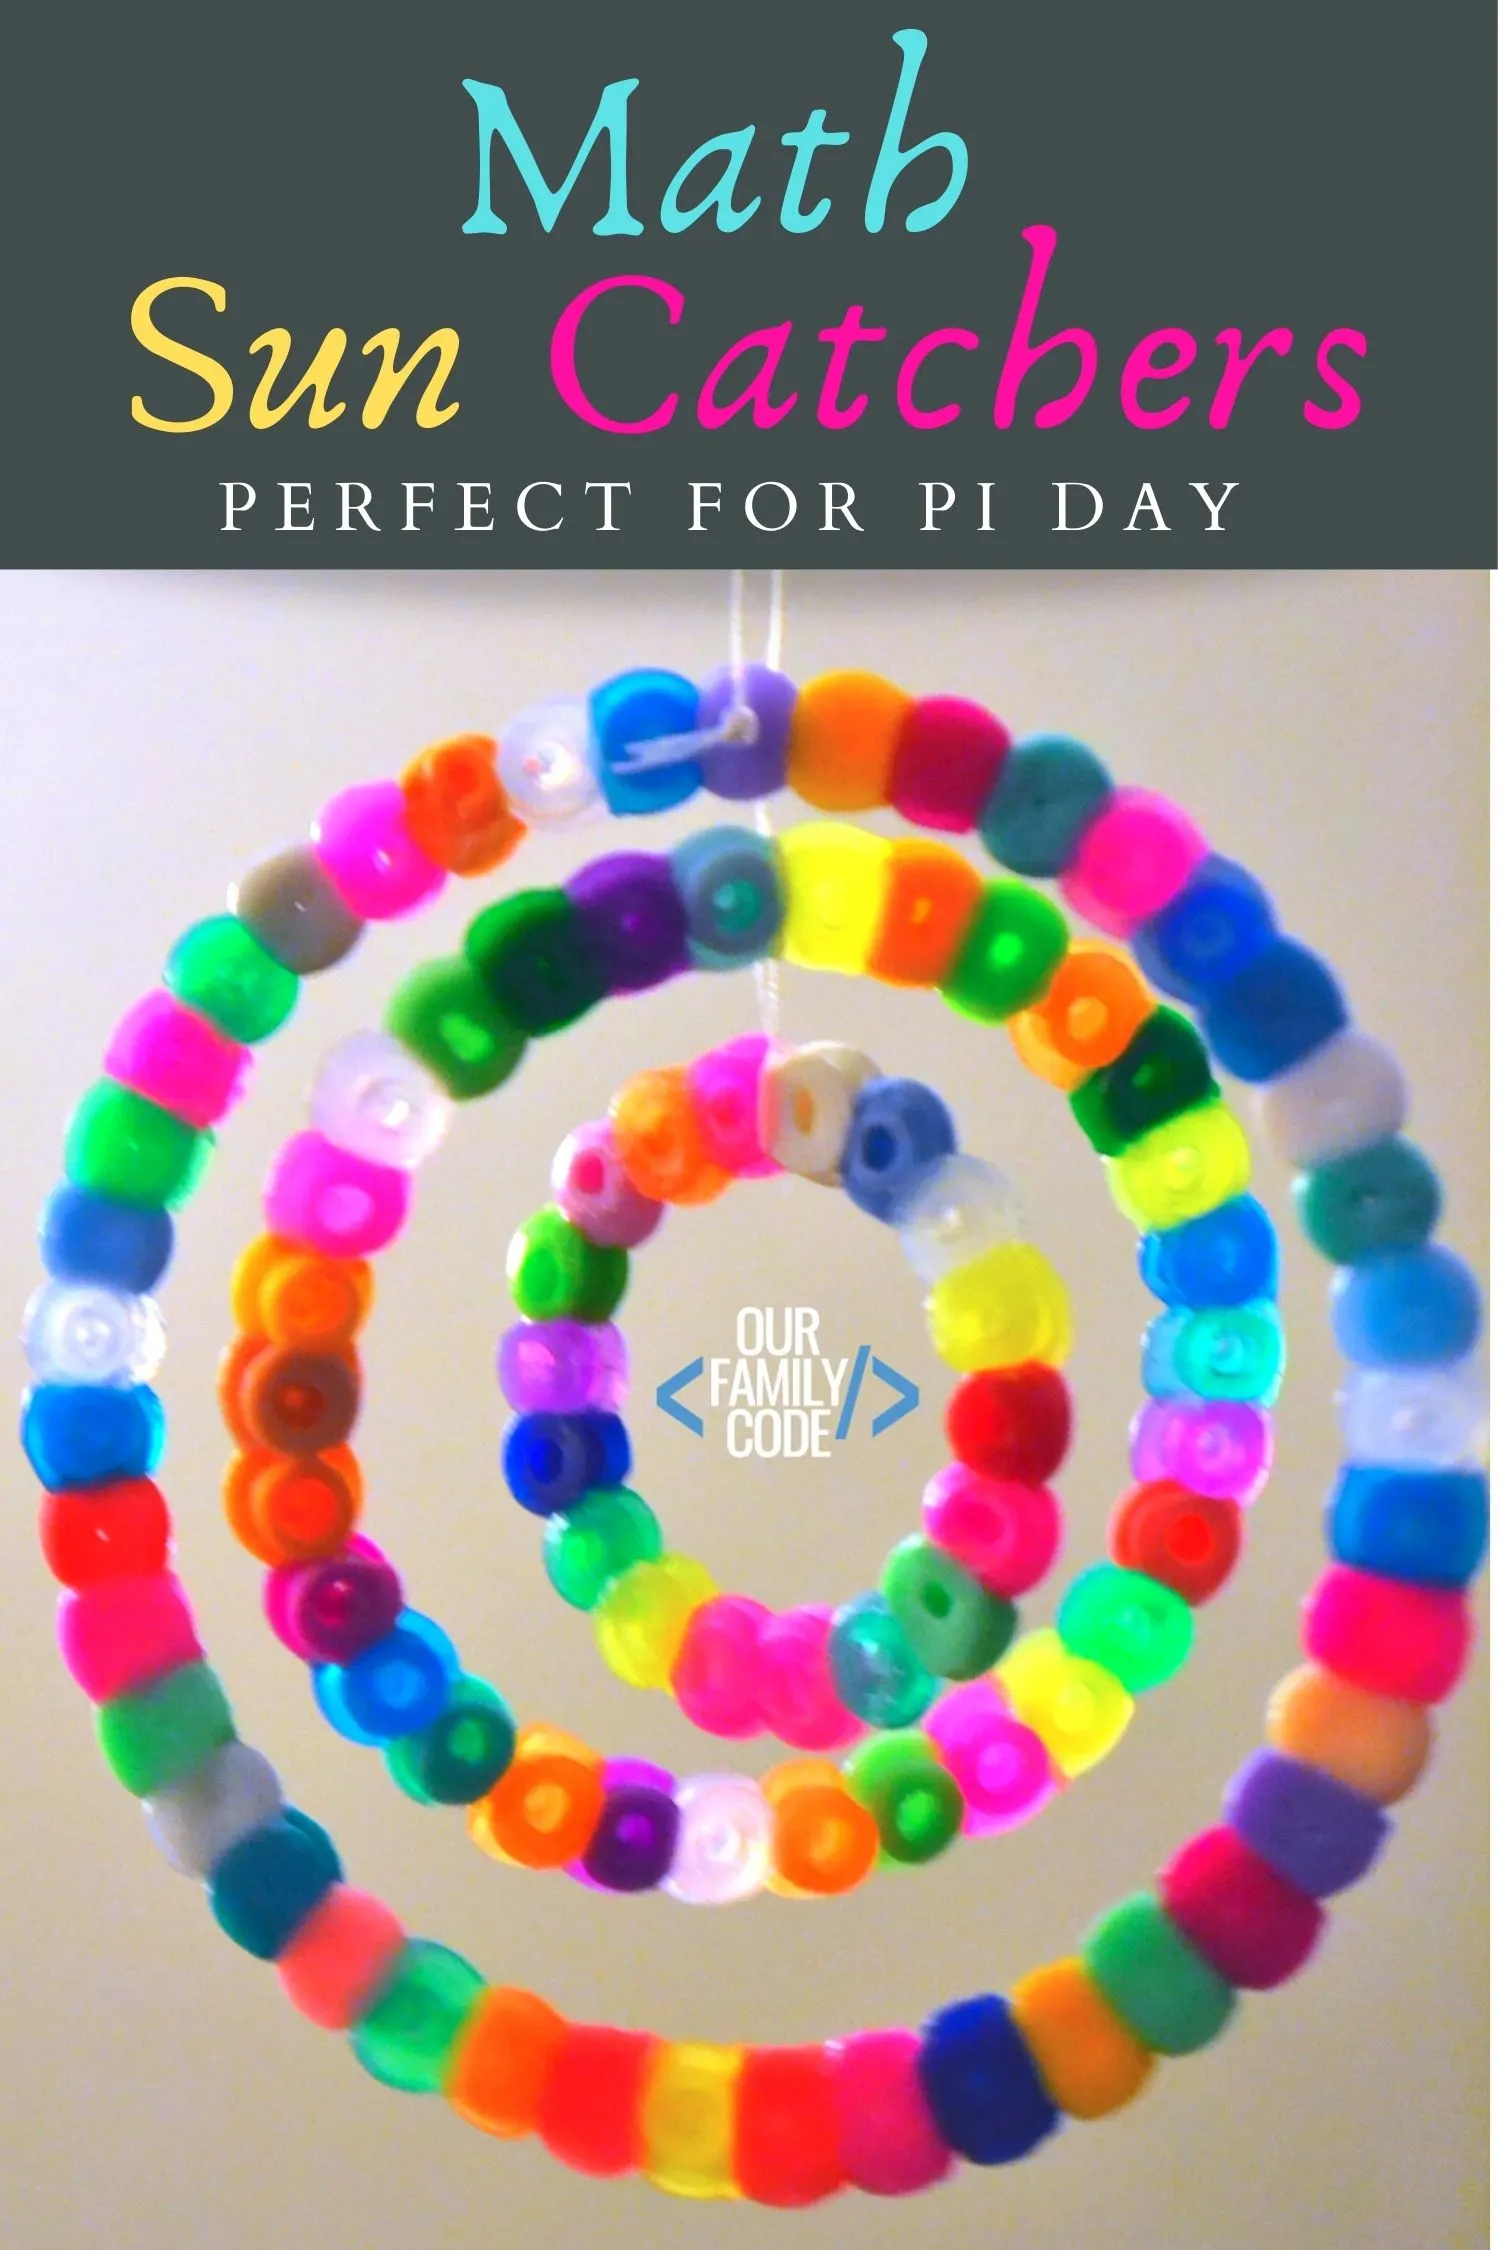 Explore the number Pi by making math sun catchers out of fuse beads for a fun math + art STEAM activity! #STEAM #PiDay #Fibonacci #mathforkids #mathart #craftsforkids #STEM #homeschool